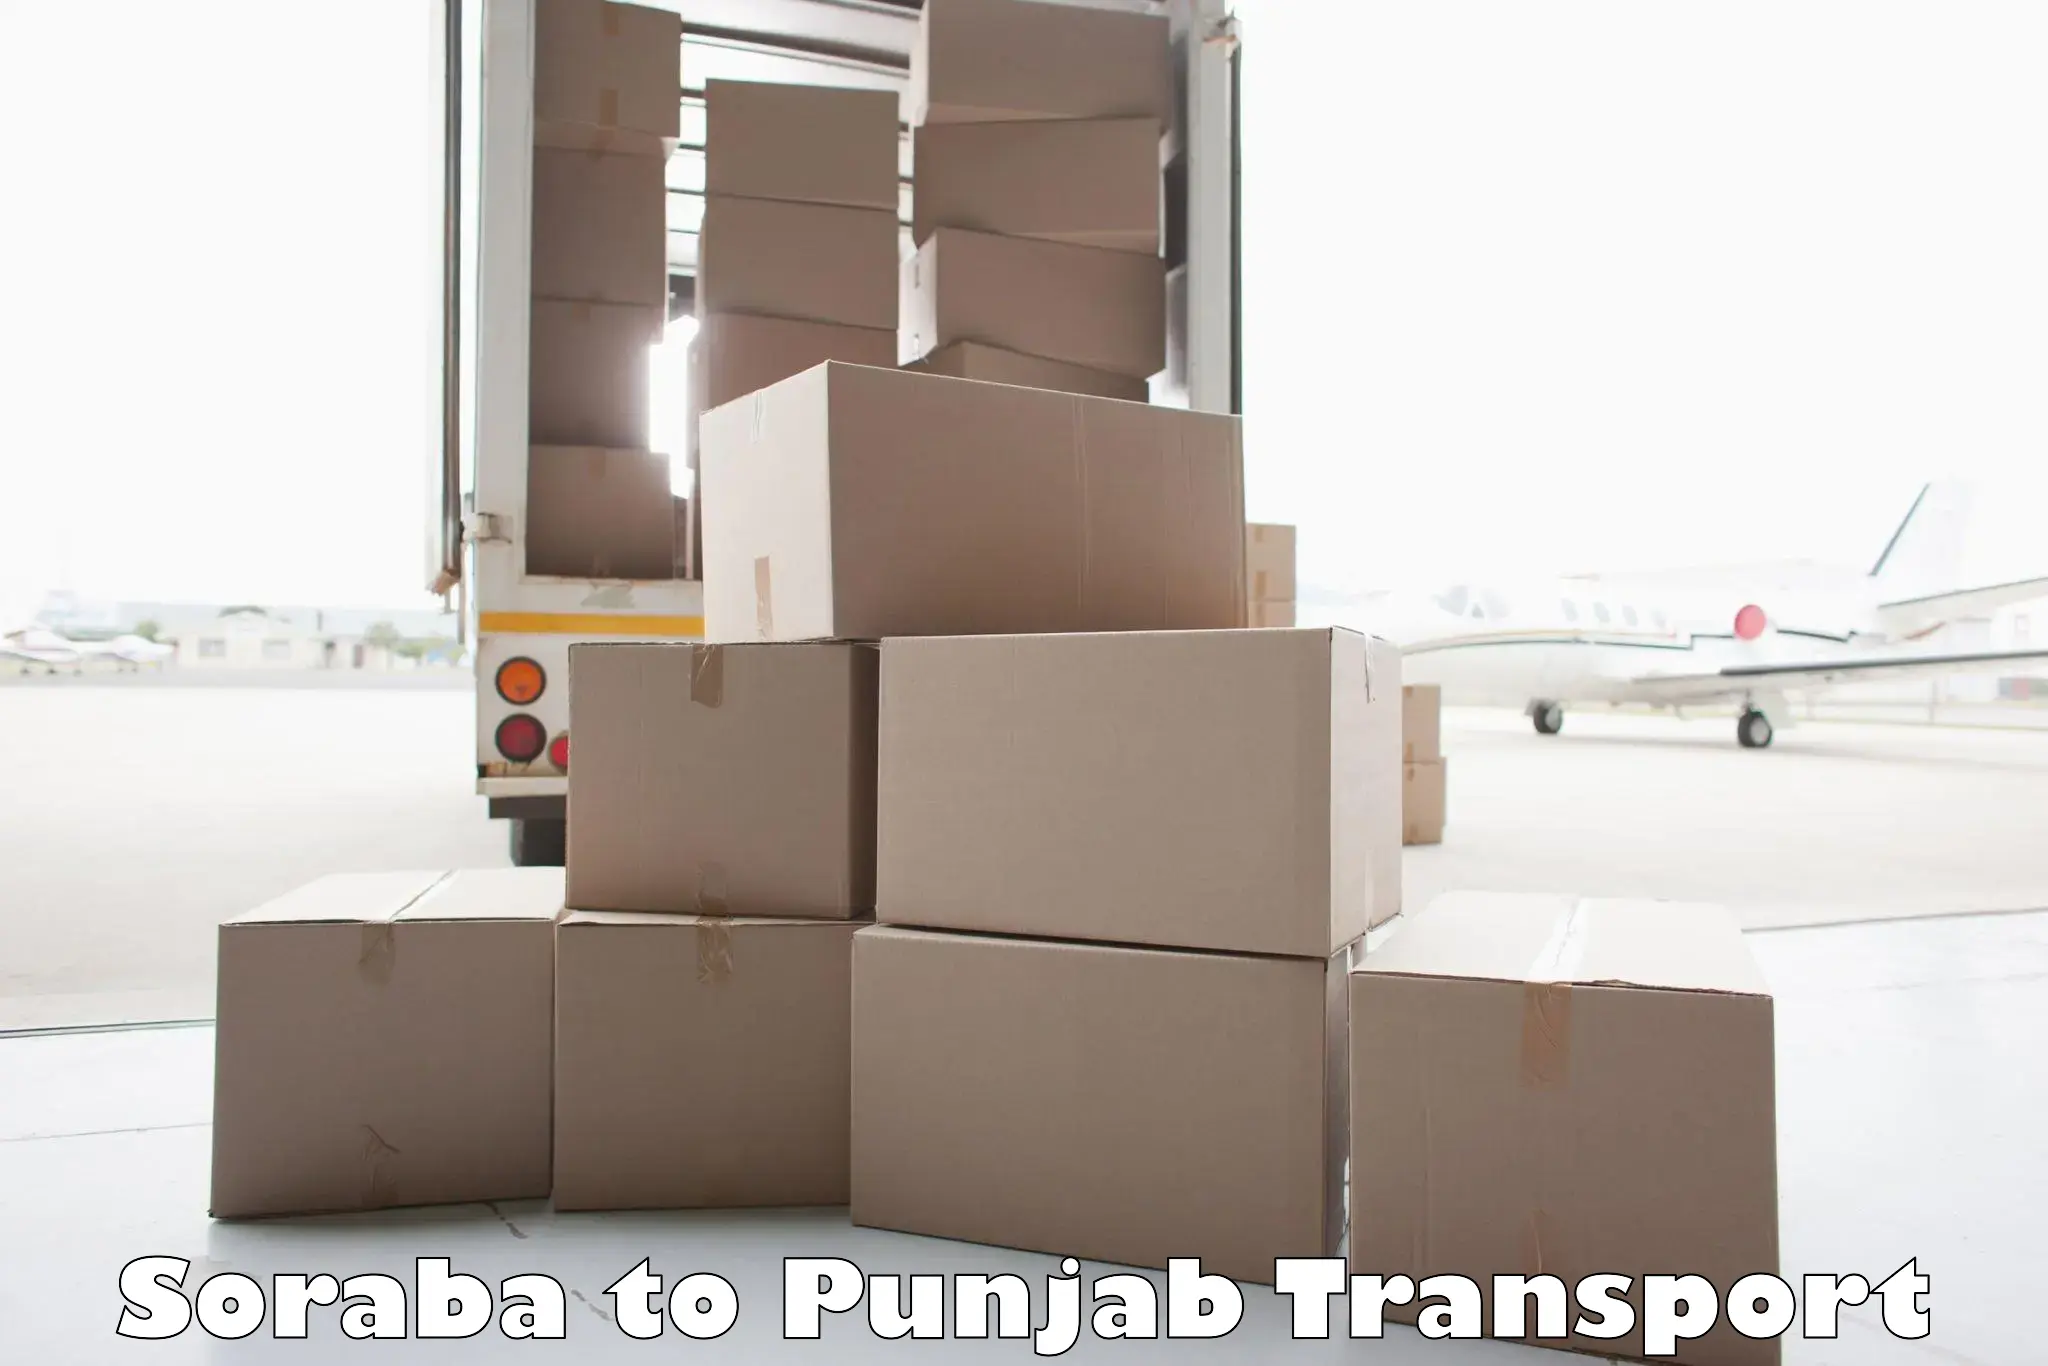 Two wheeler parcel service Soraba to Punjab